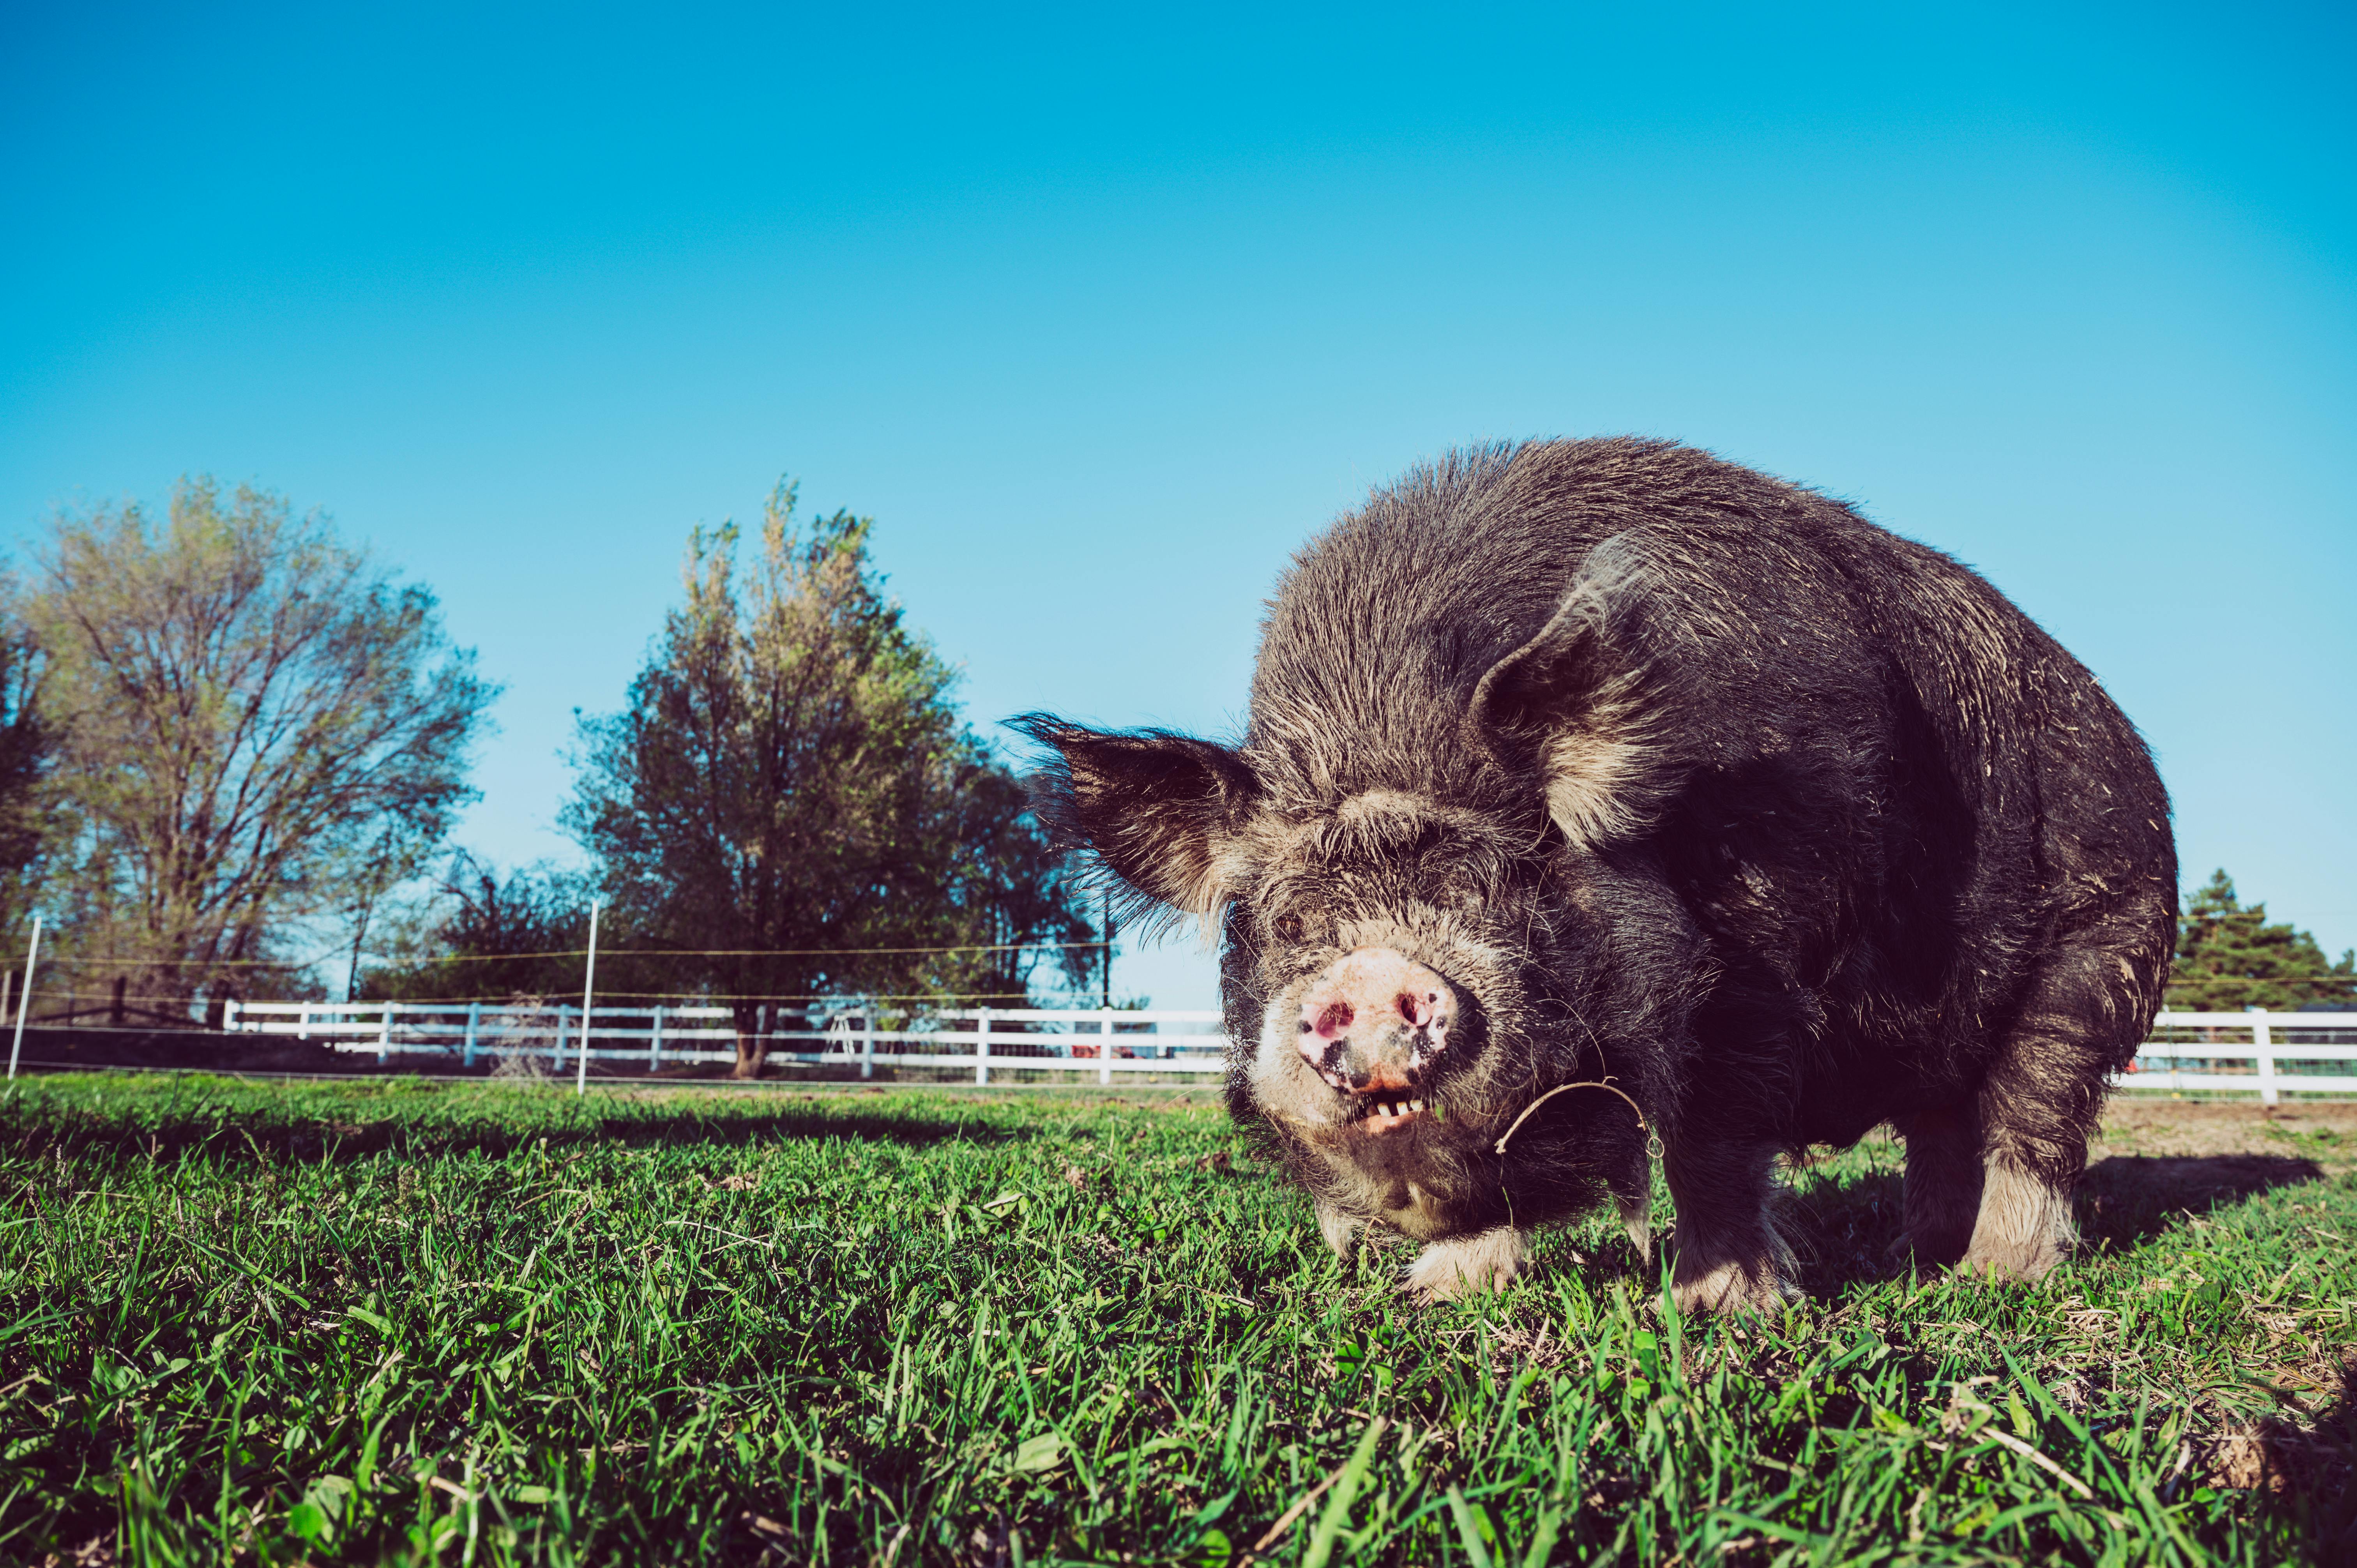 pig feeding grass on fenced farm under blue sky